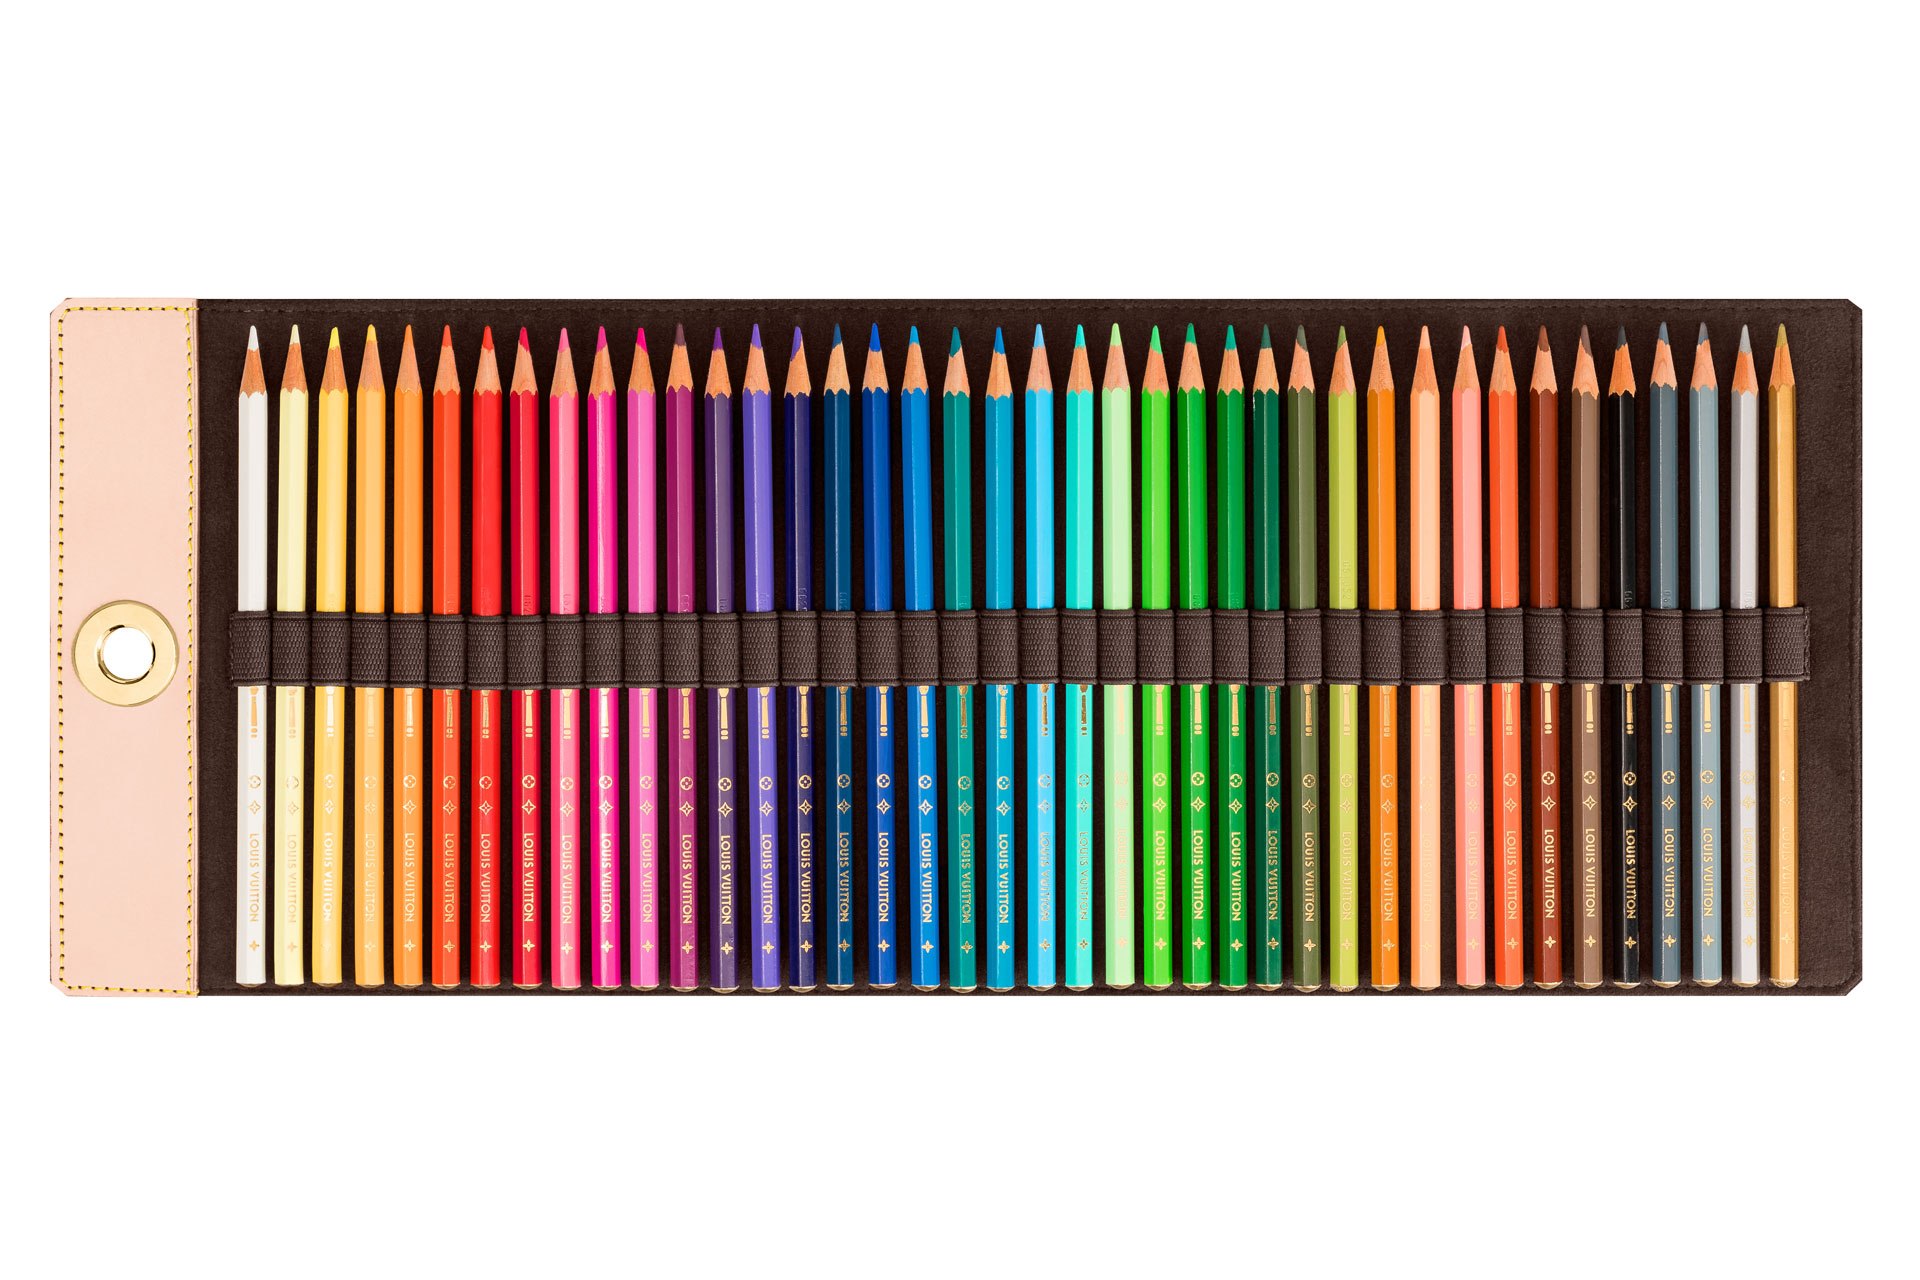 Цветные карандаши в пенале. Louis Vuitton карандаши. Louis Vuitton Pencils. Пенал Луи Виттон для карандашей. Набор цветных карандашей.